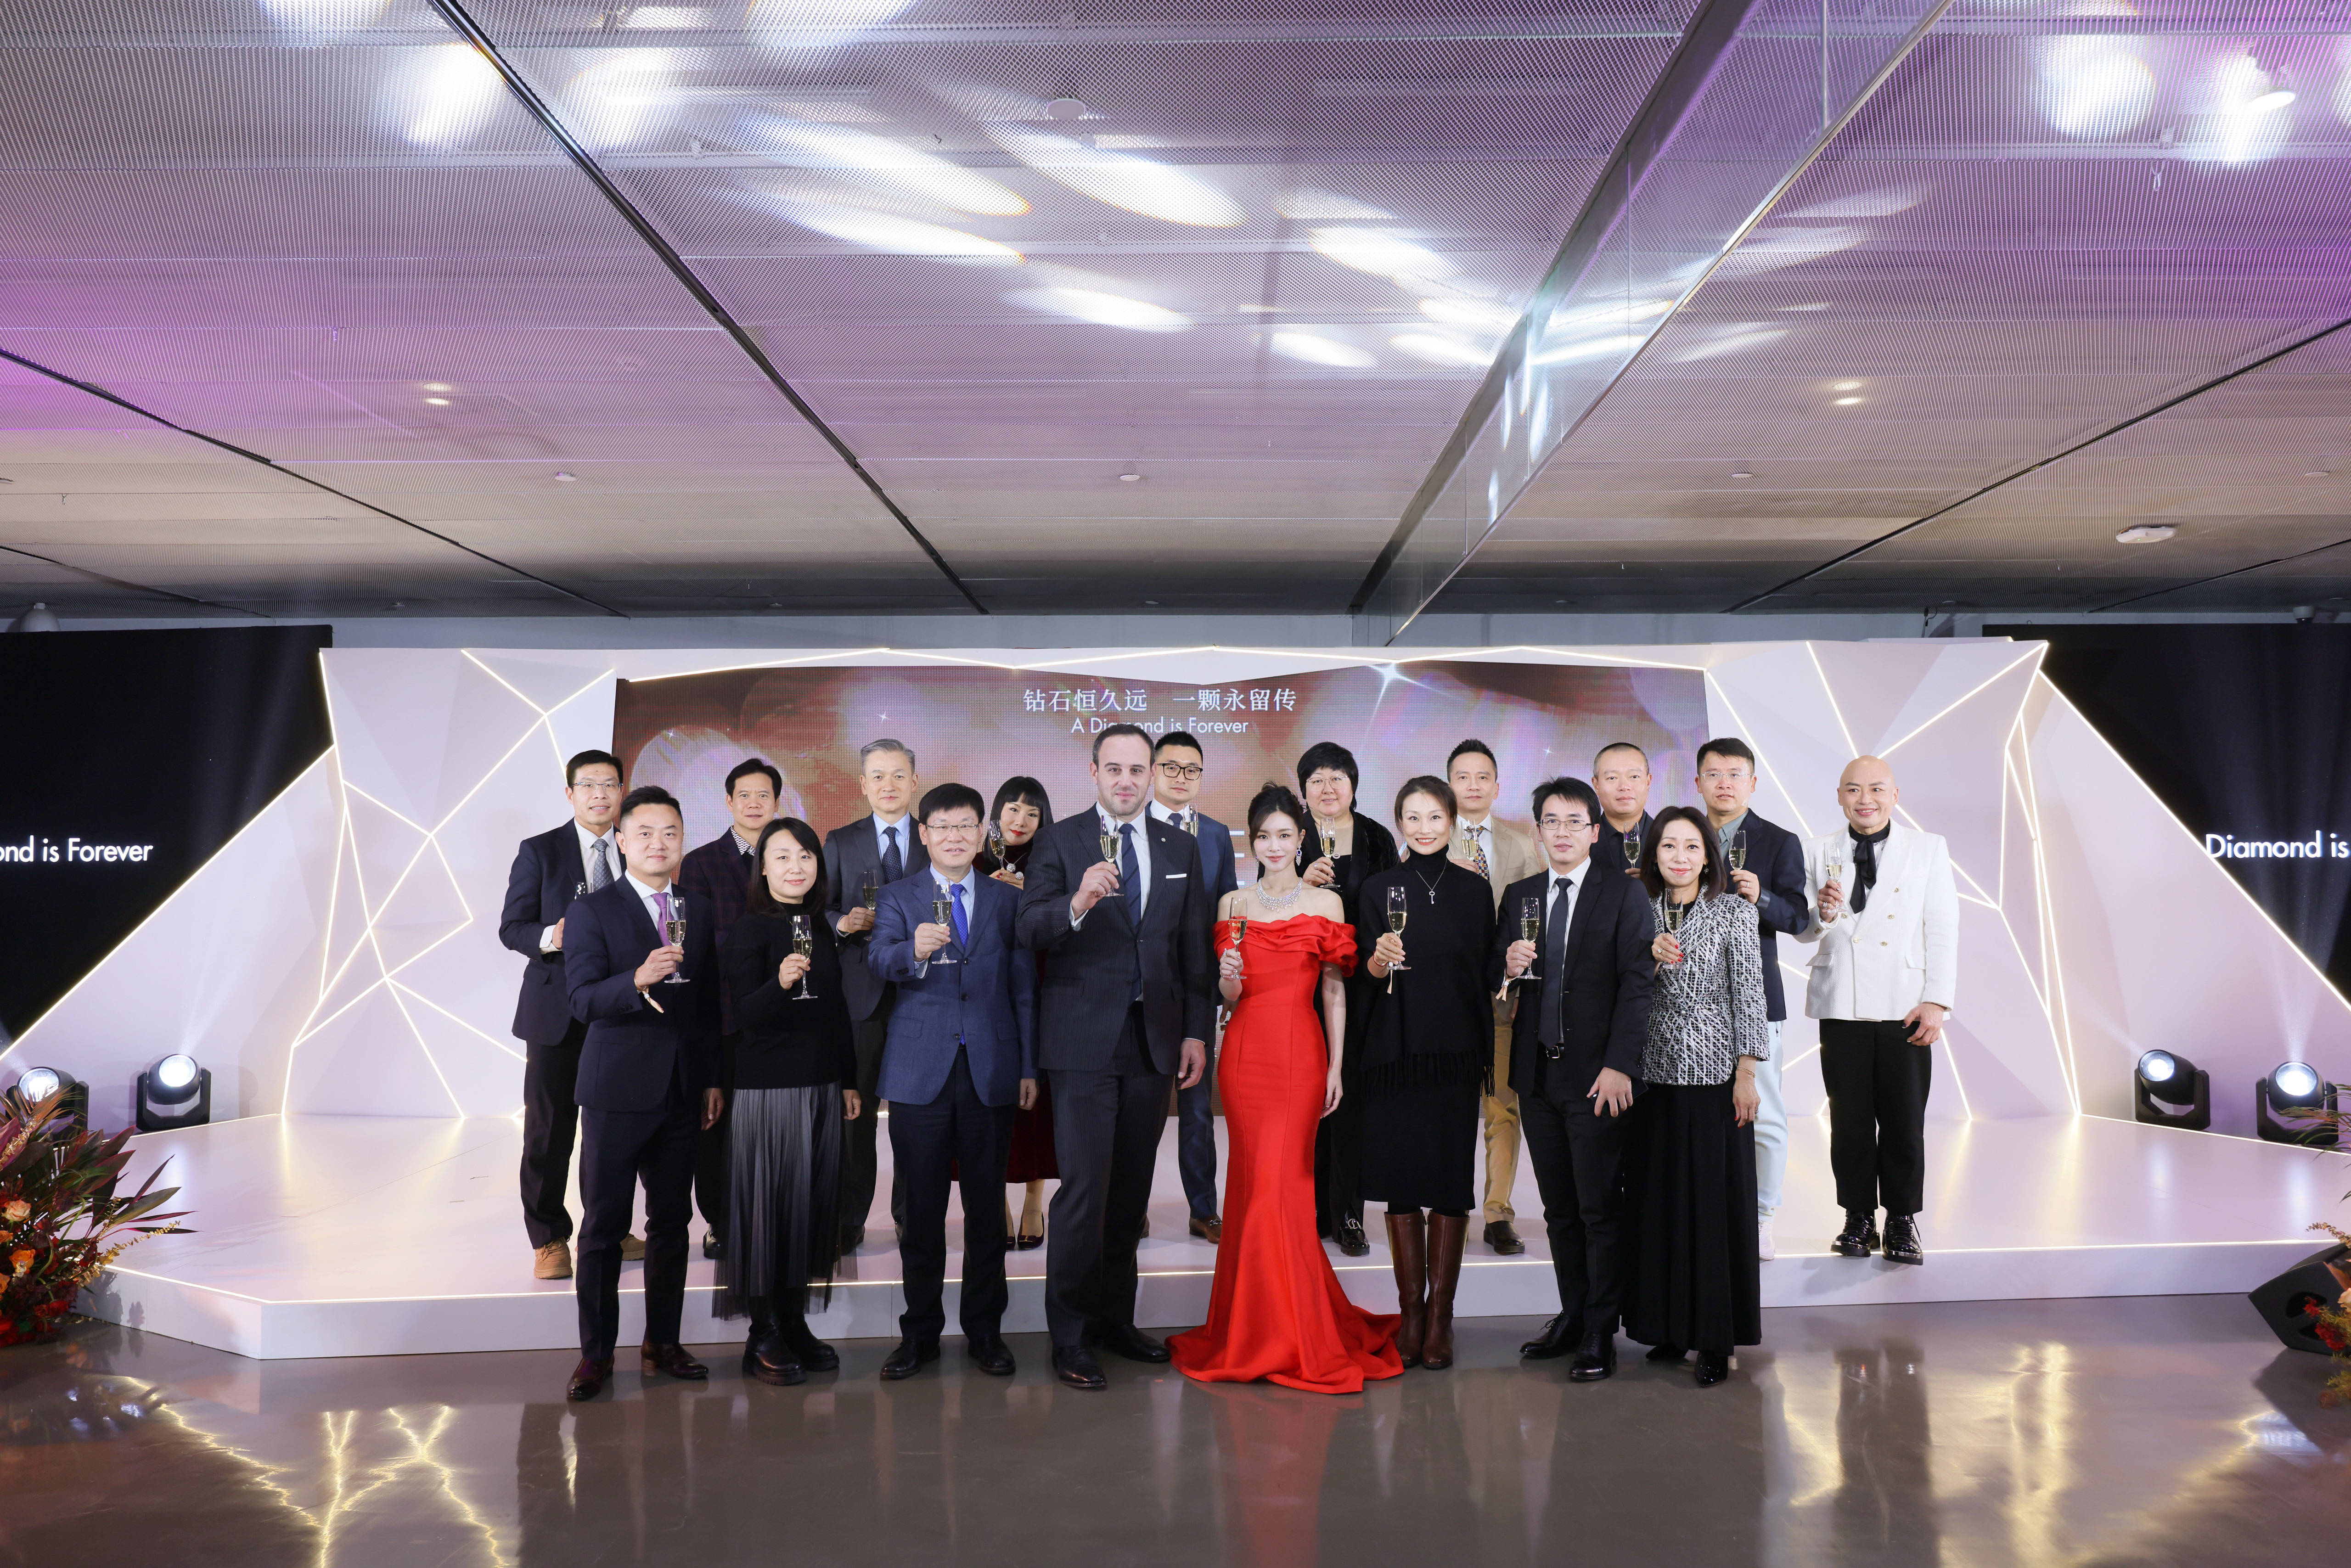 戴比尔斯集团在北京举办行业酒会 官宣与珠宝国检进一步合作